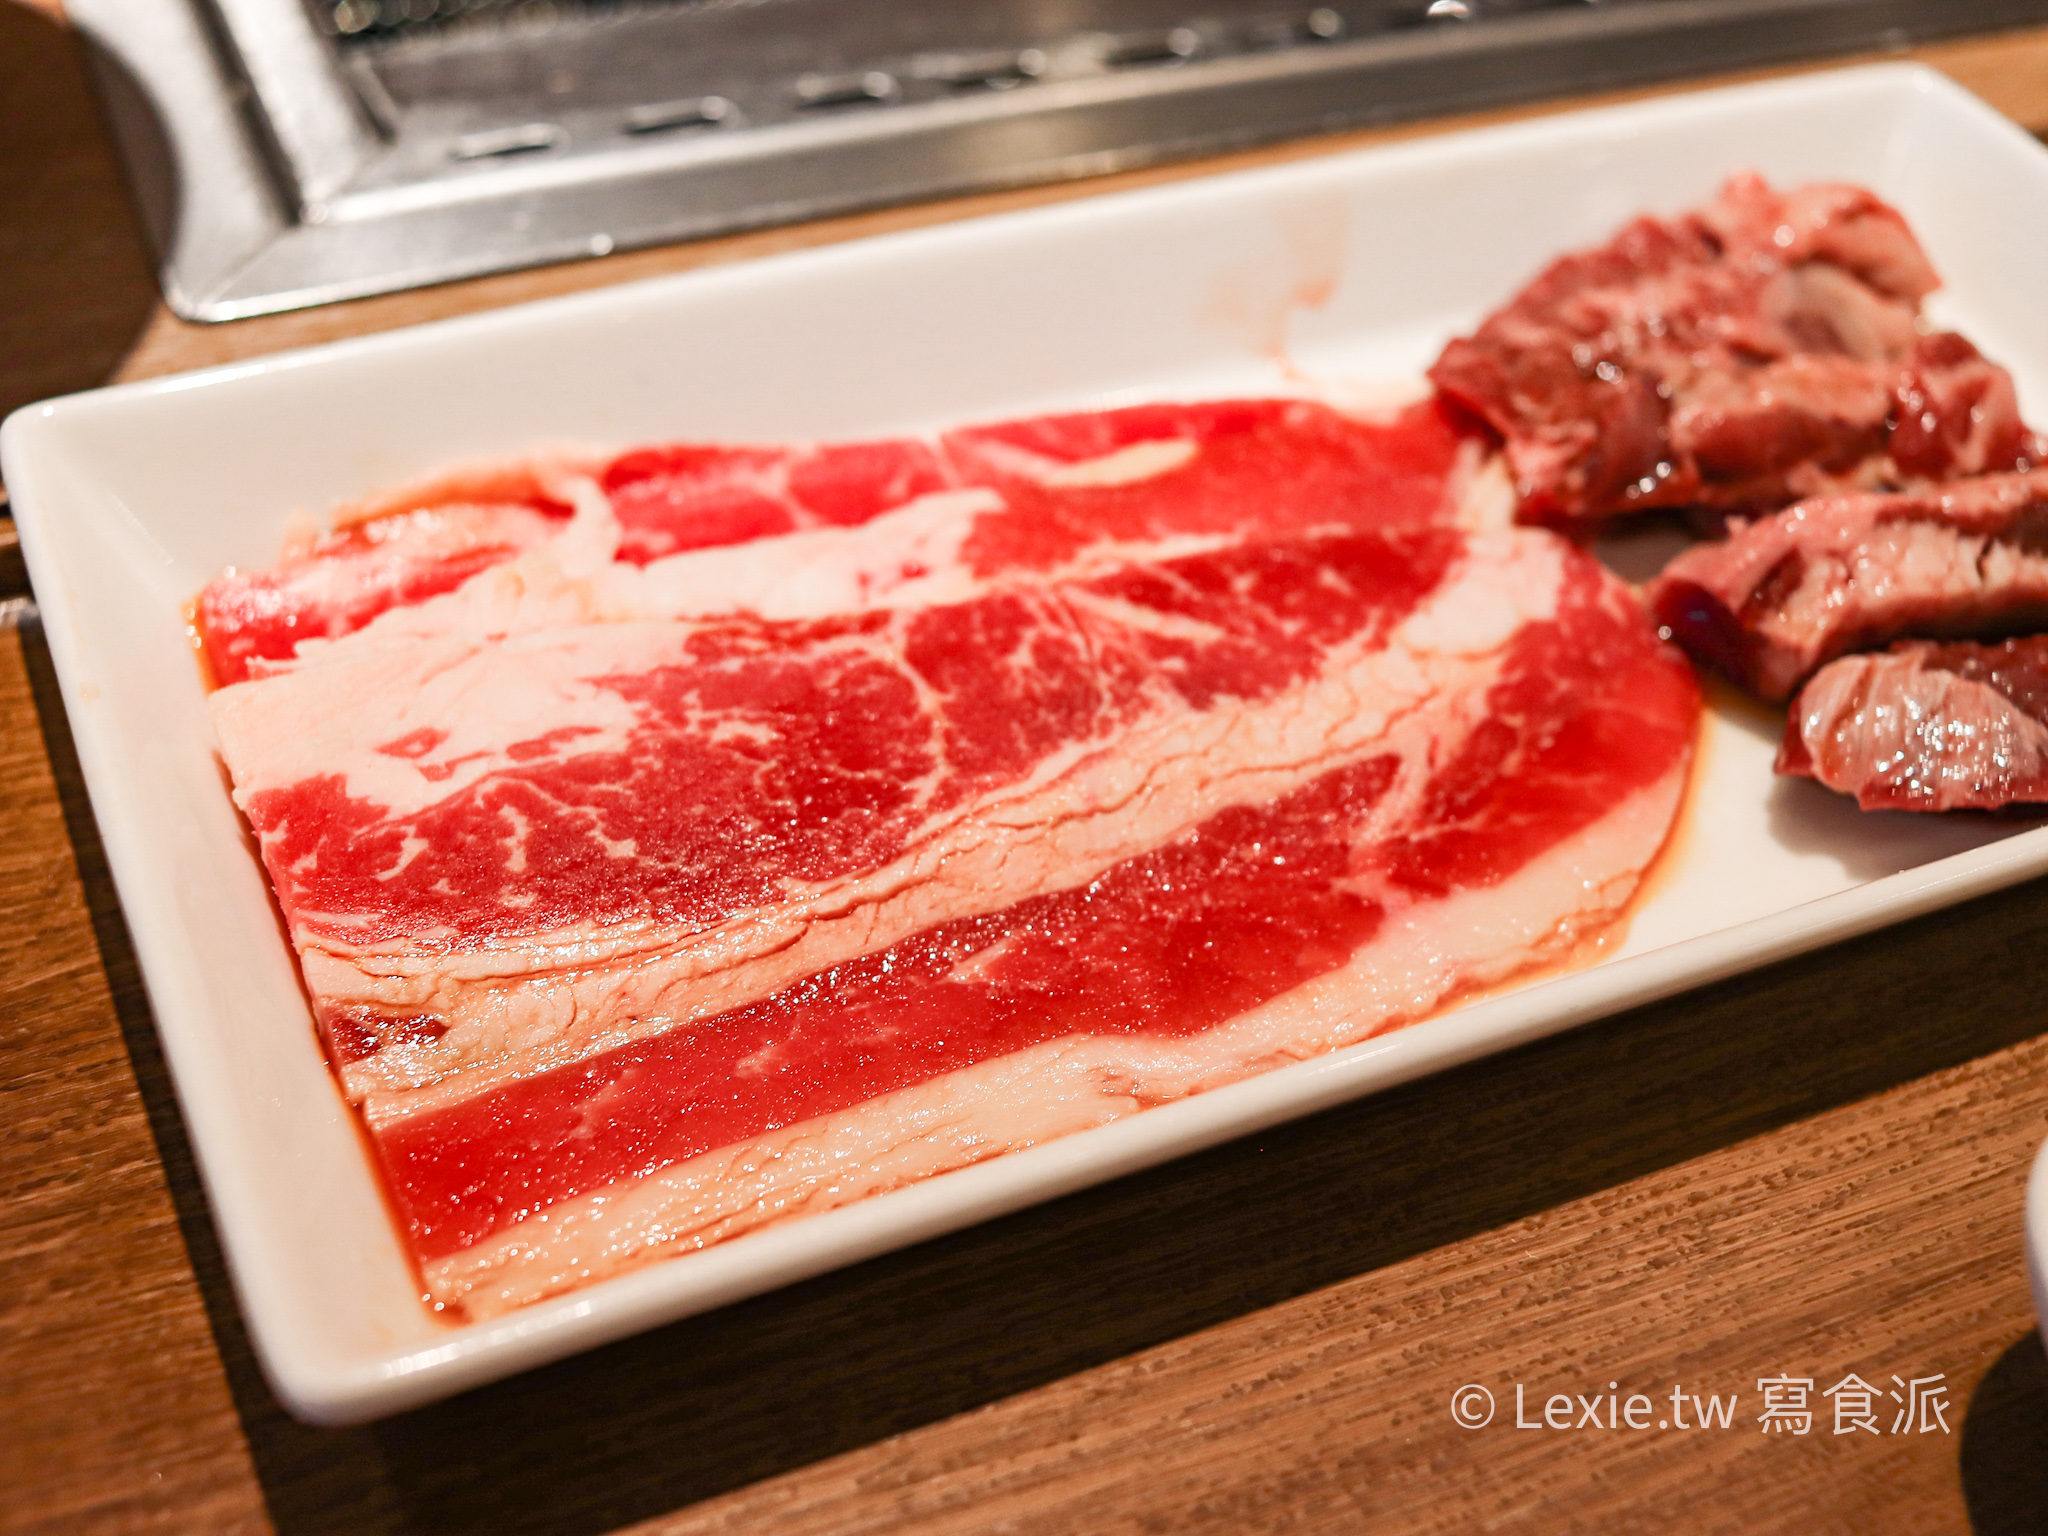 燒肉LIKE松江店一人也能吃燒肉，要確定耶?吃完蠻空虛的，價位也不低